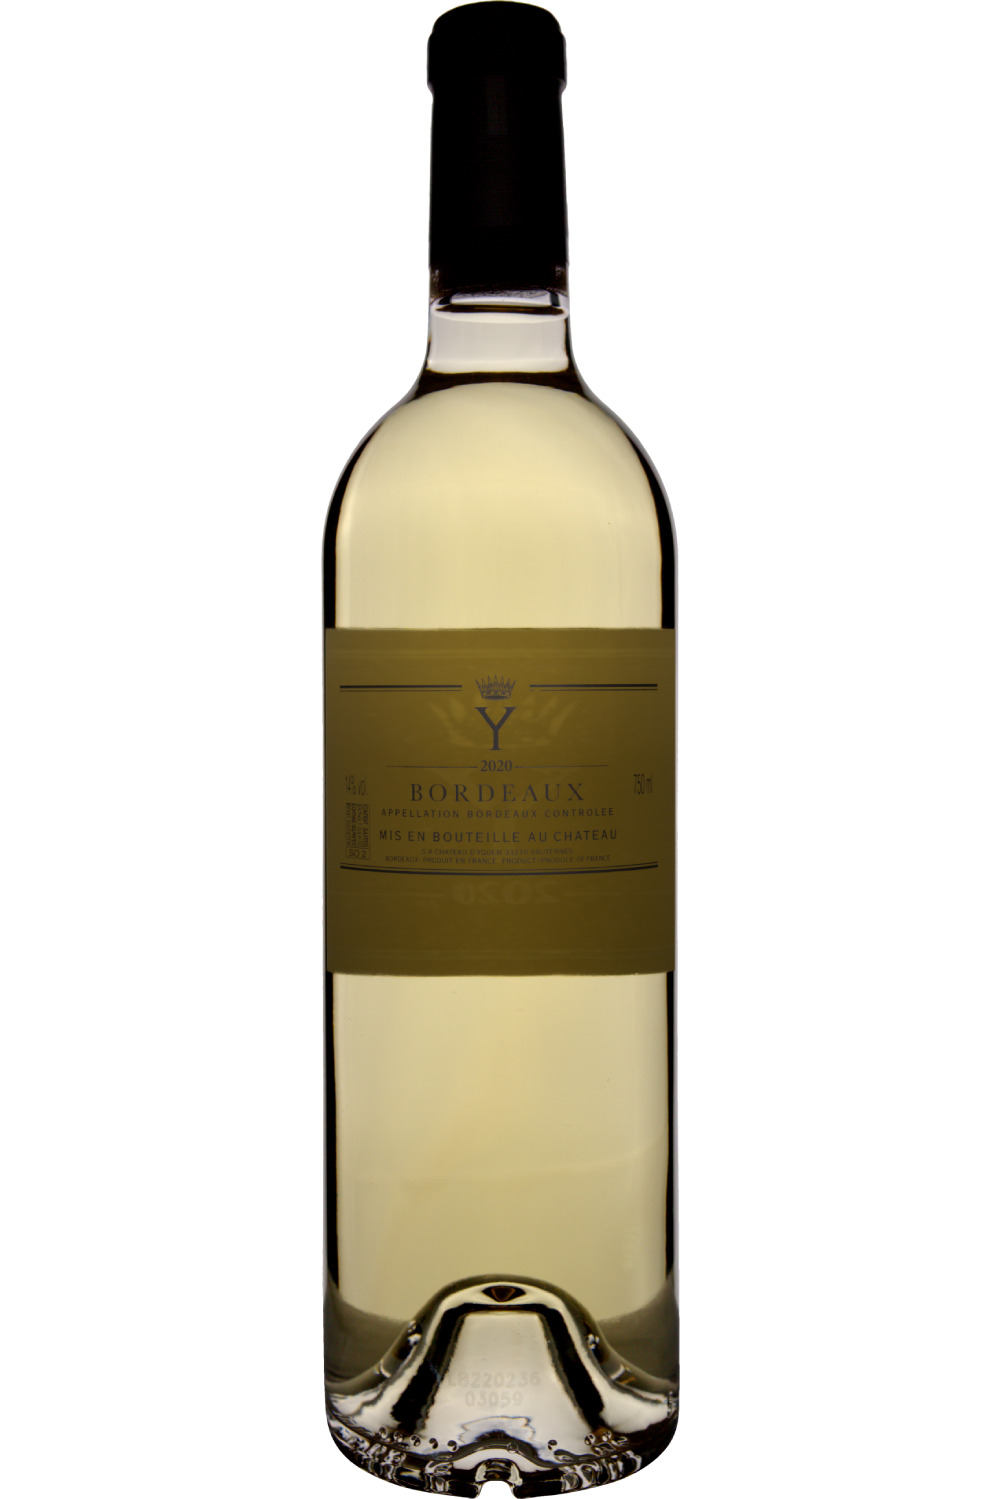 WineVins Y Yquem Branco 2020